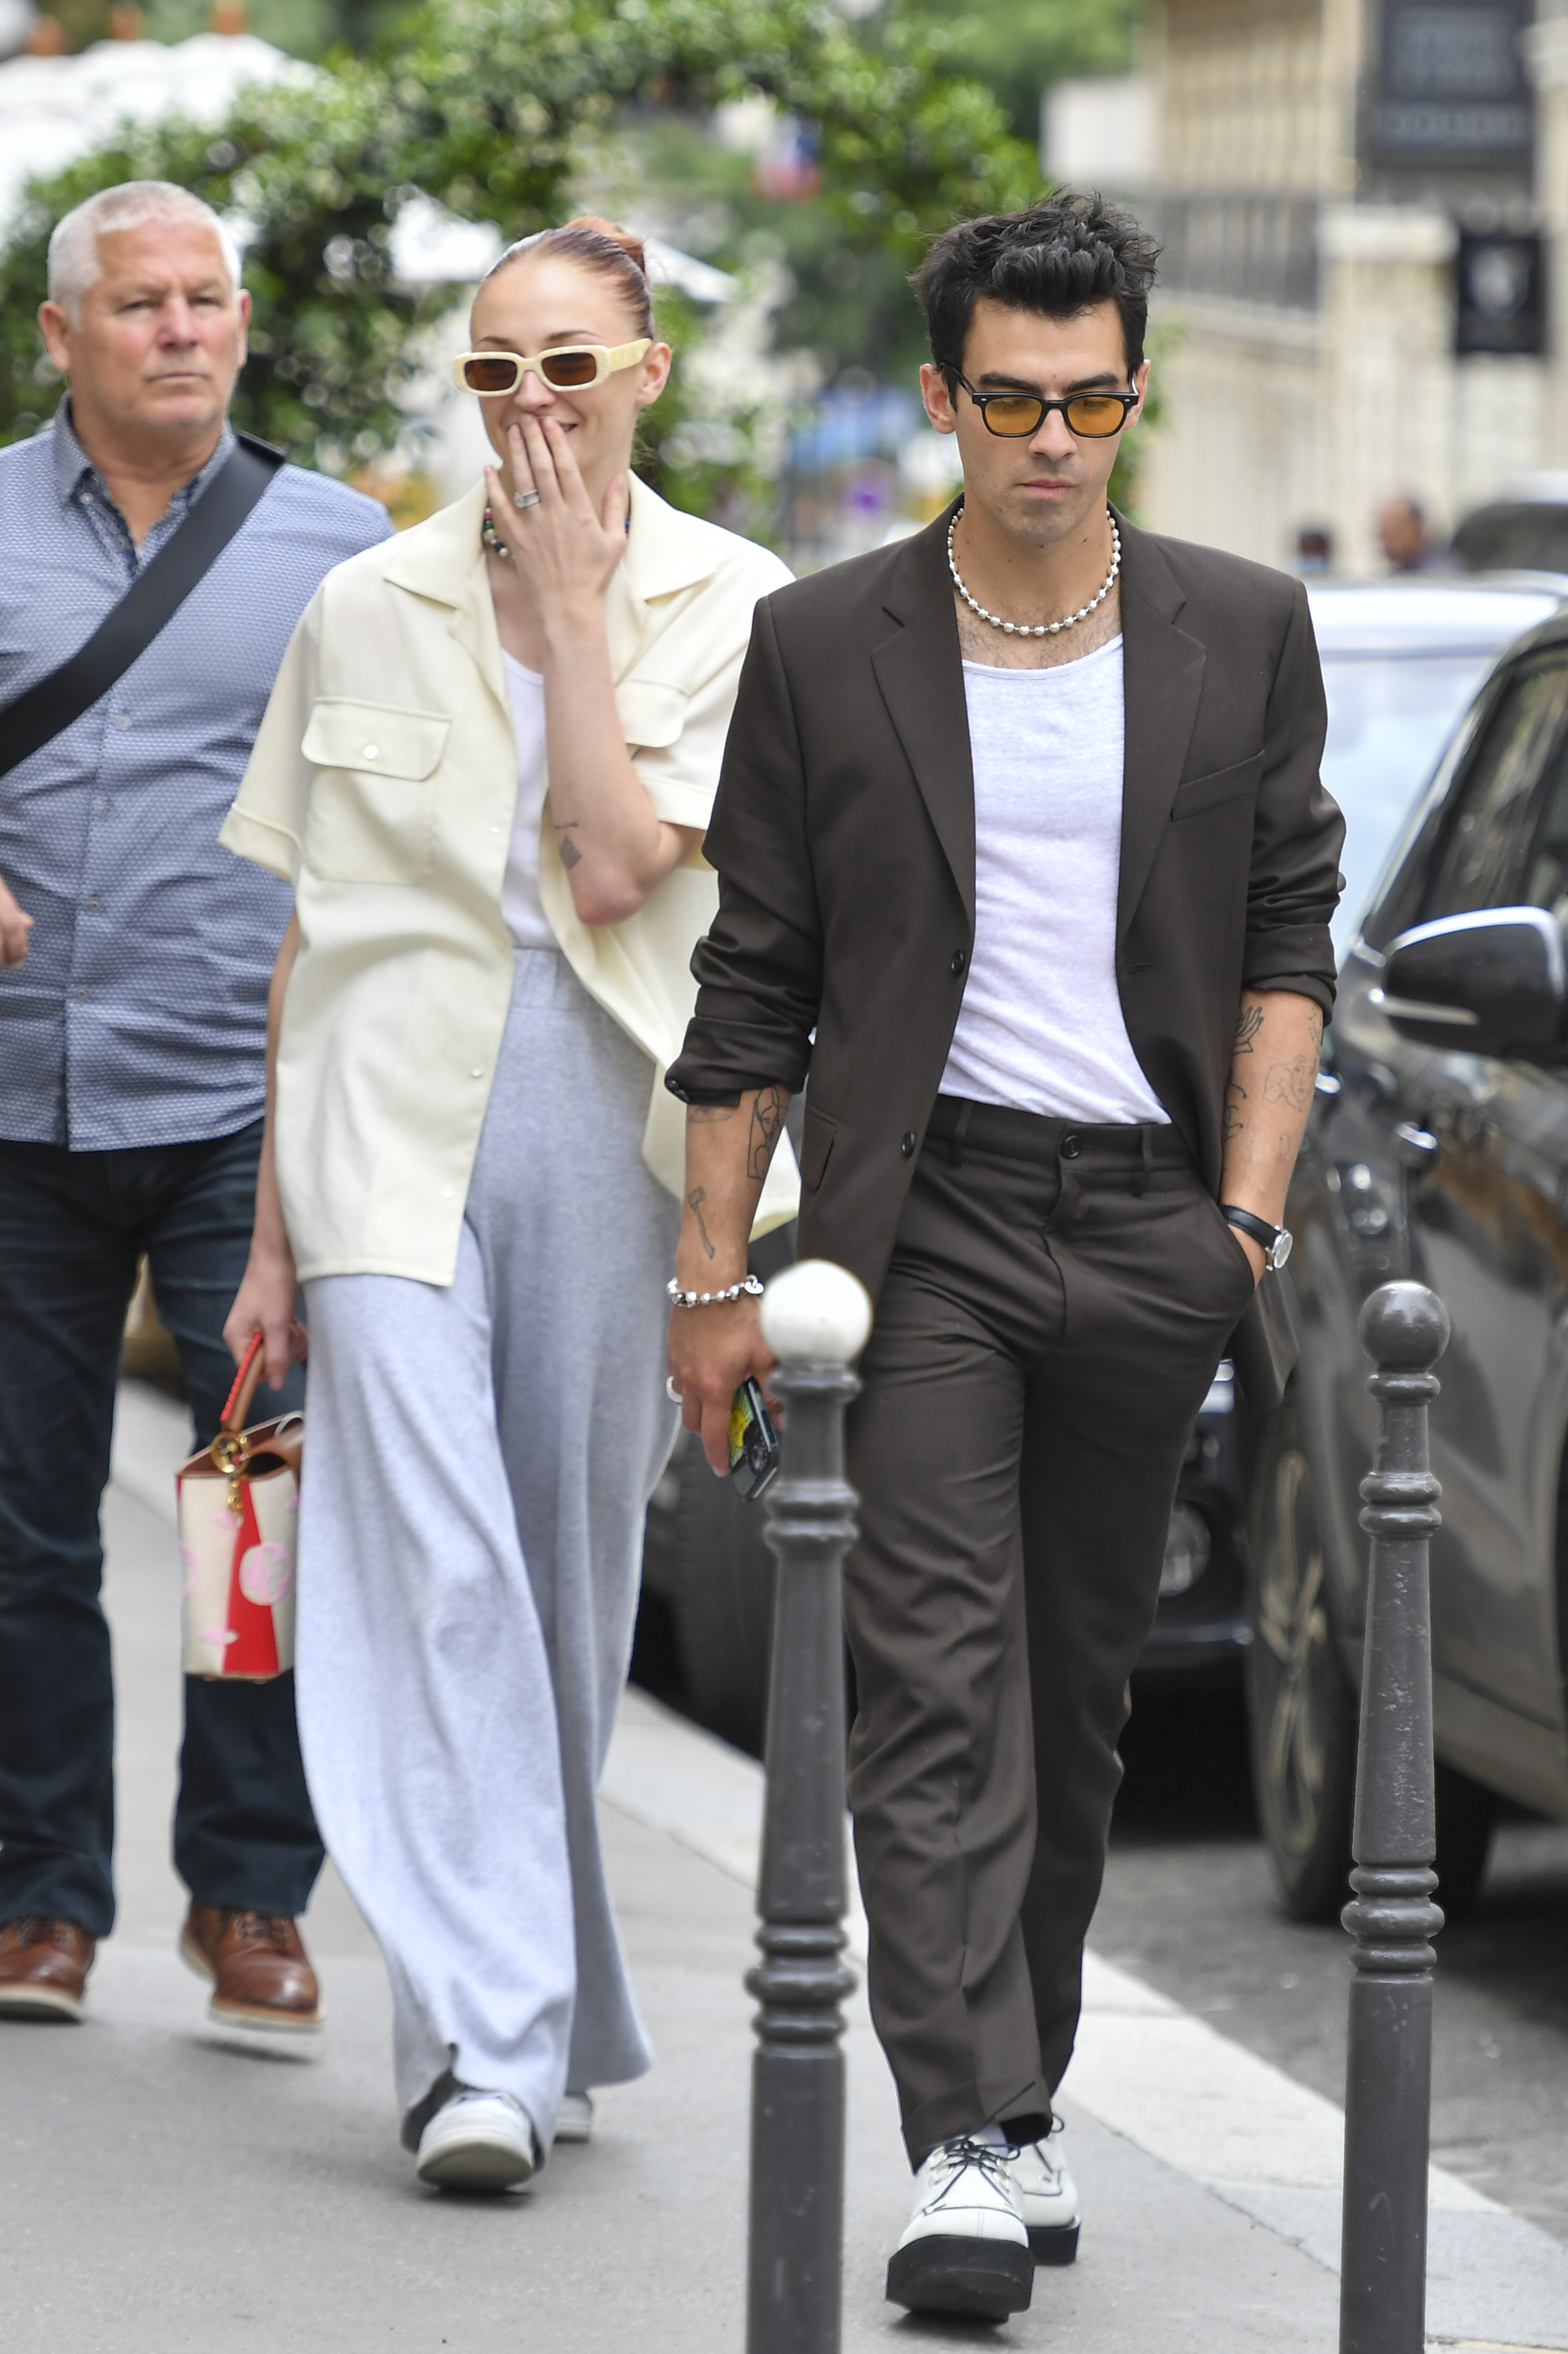 Sophie Turner y Joe Jonas viajaron a Francia para asistir al París Fashion week. La pareja fue fotografiada mientras caminaba por la calle. El músico lució un traje con remera blanca mientras que la actriz optó por un pantalón gris y remera blanca que combinó con una camisa (Fotos: The Grosby Group)